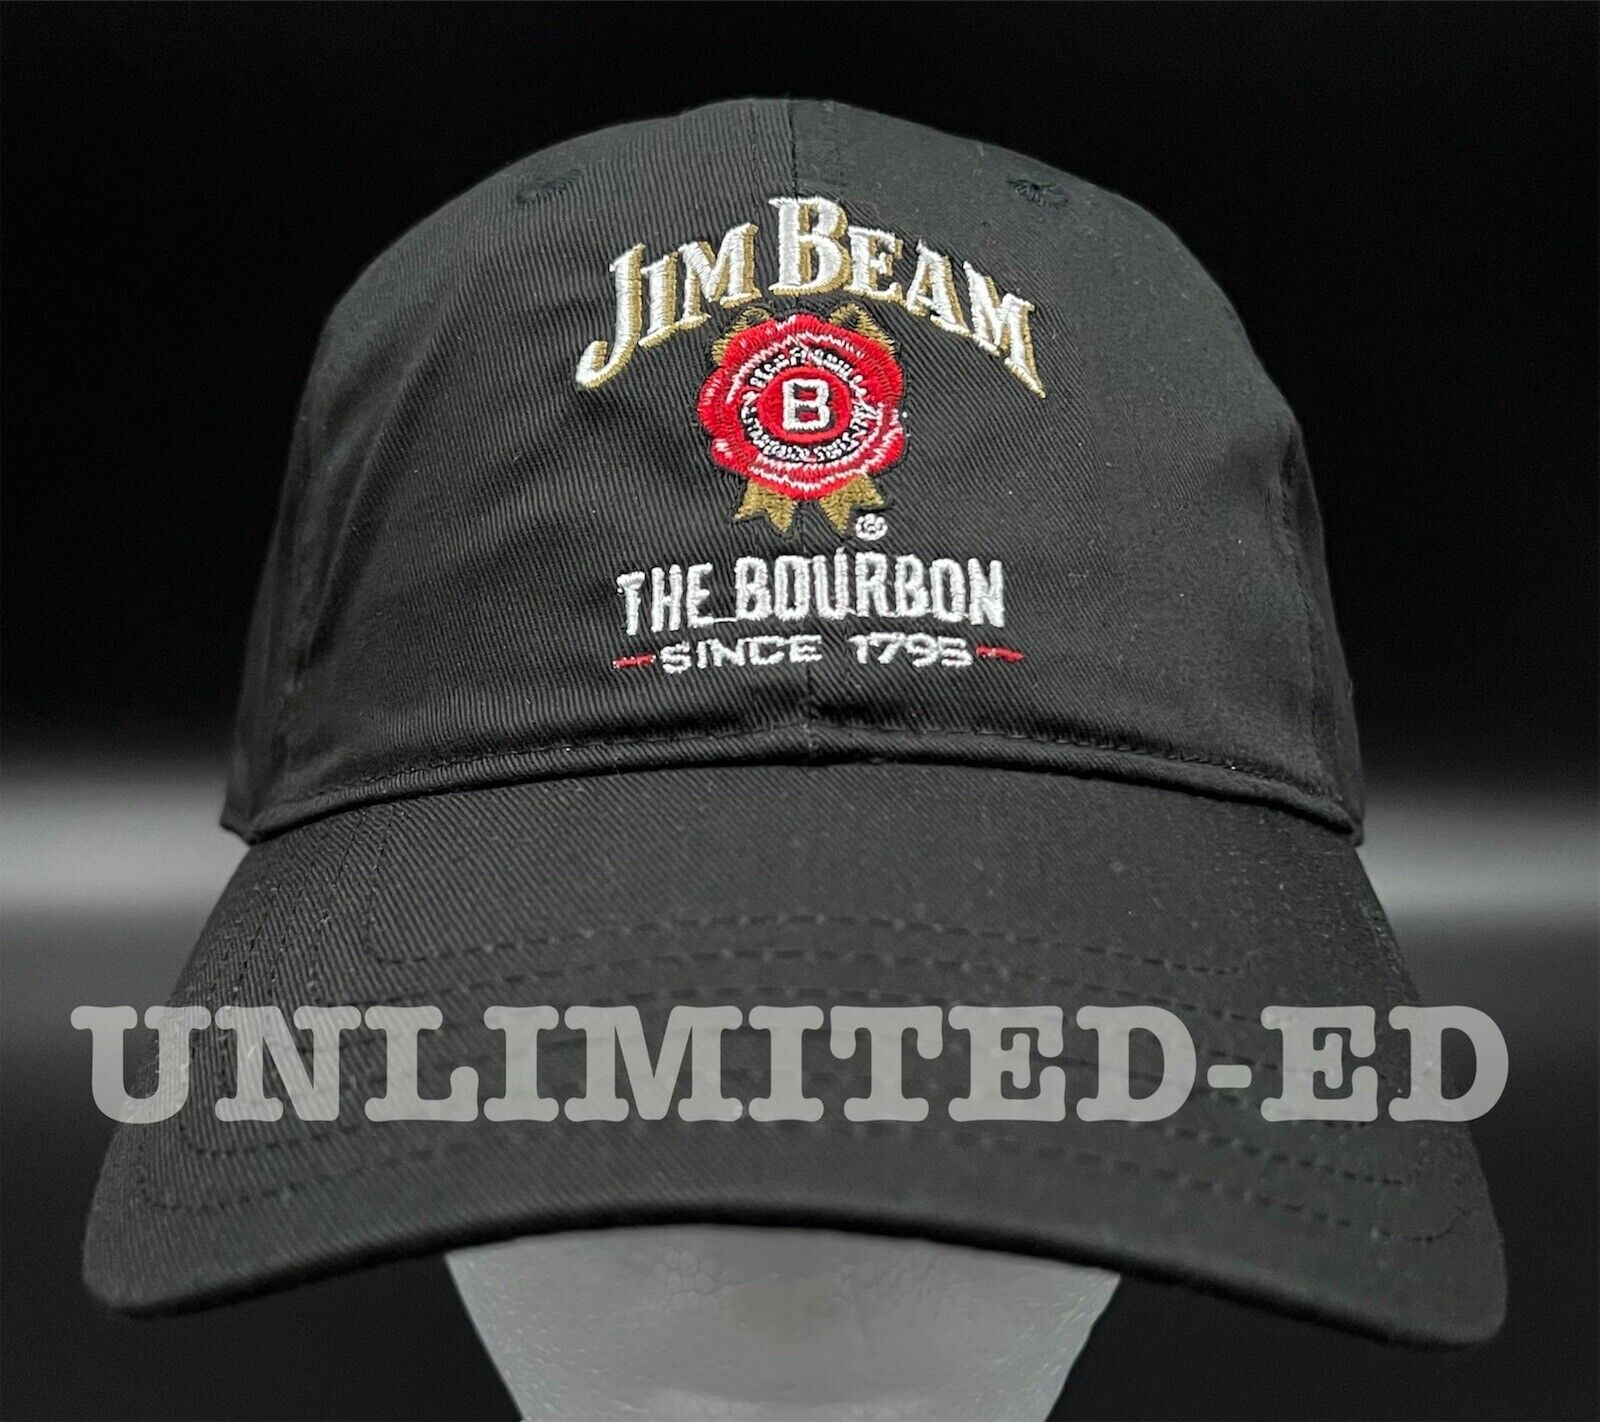 Jim Beam Hat BRAND NEW Black Trucker Cap Back Strap Bourbon Whiskey 1795 JB Jim Beam